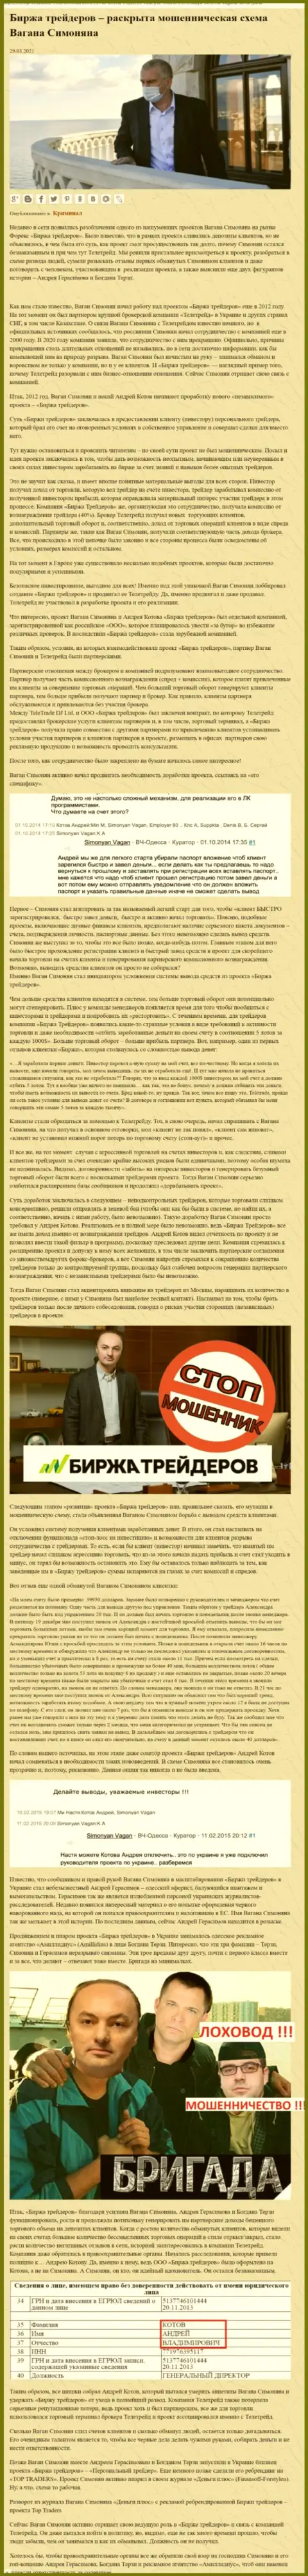 Рекламой фирмы Биржа Трейдеров, связанной с мошенниками Теле Трейд, тоже был занят Богдан Терзи